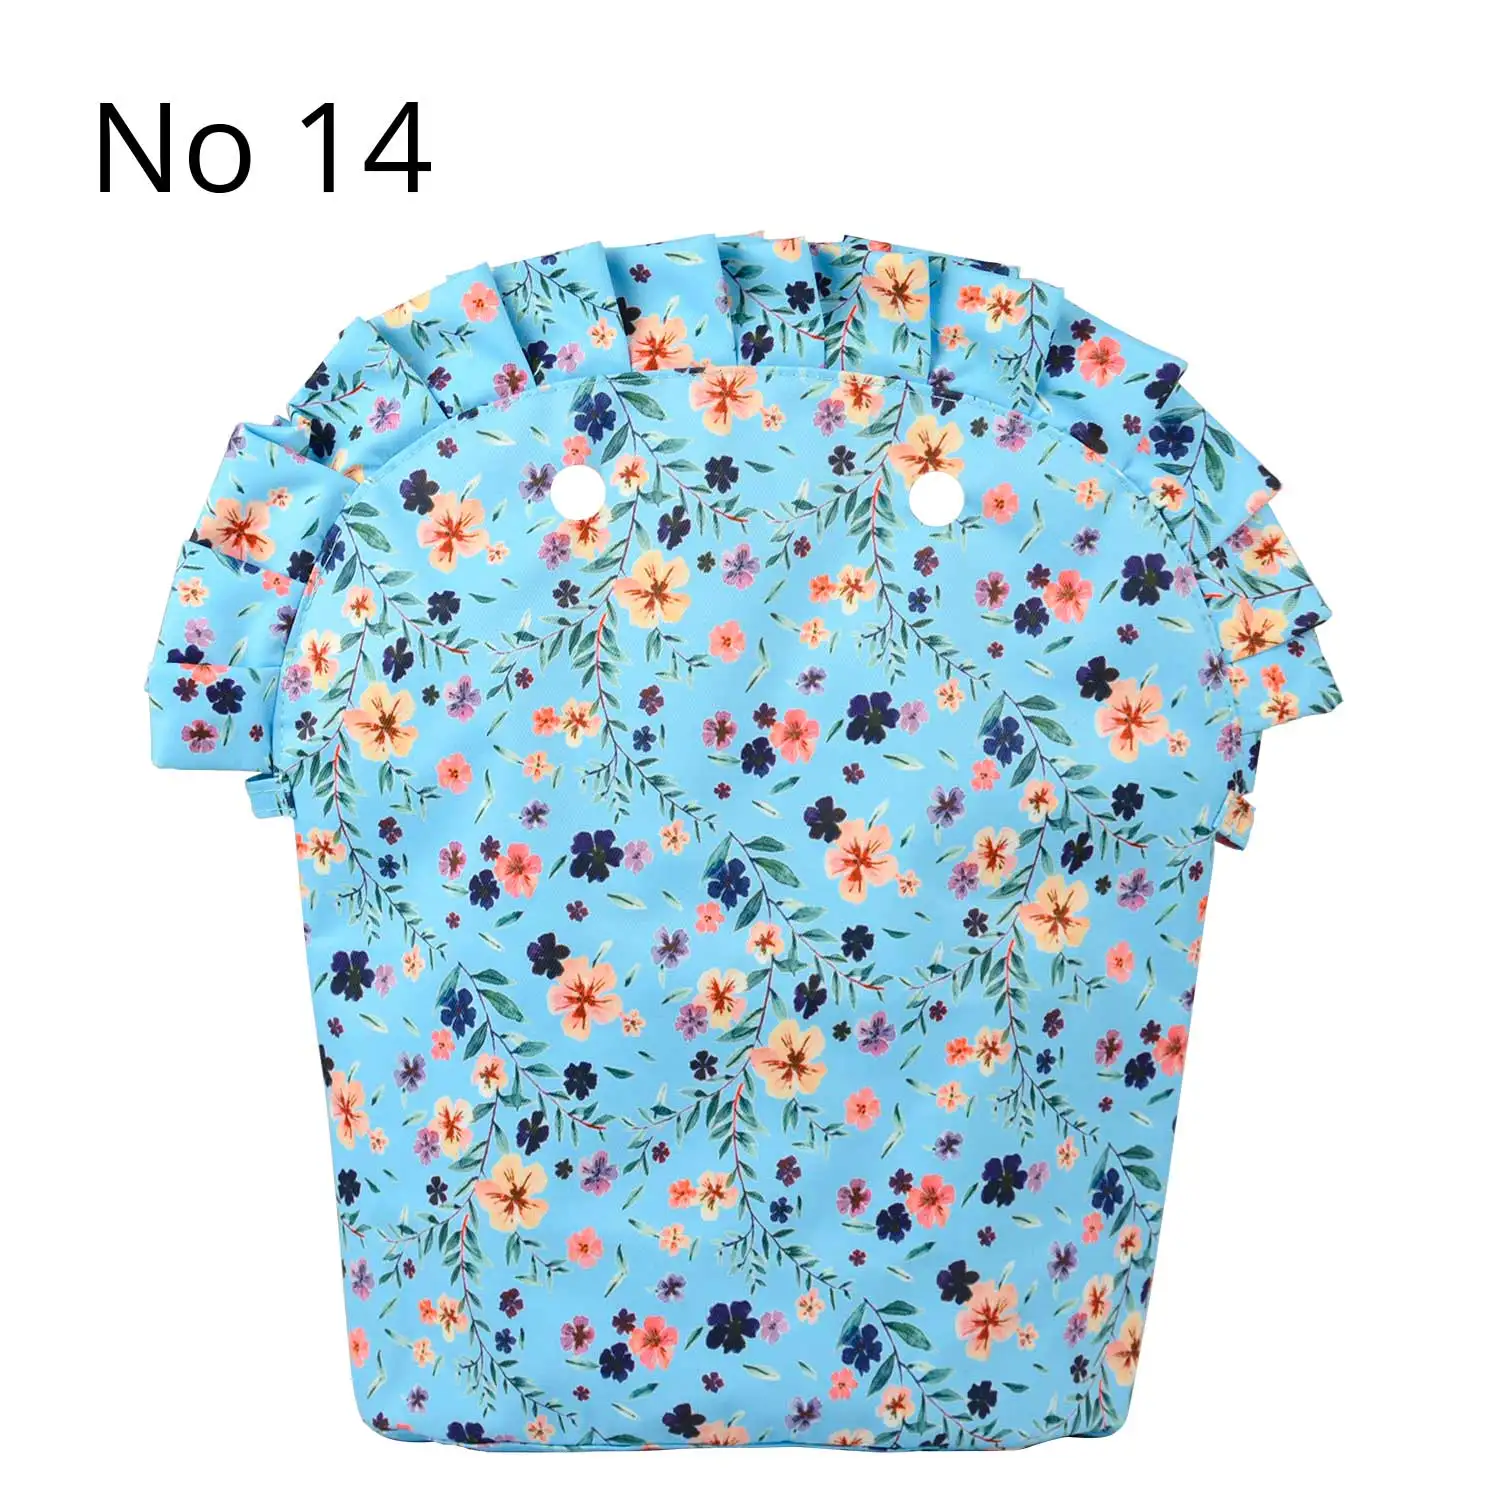 TANQU цветочный оборка складка подкладка карман на молнии для Obag 50 композитная ткань вставка с внутренним водонепроницаемым покрытием для O сумка 50 - Цвет: No 14